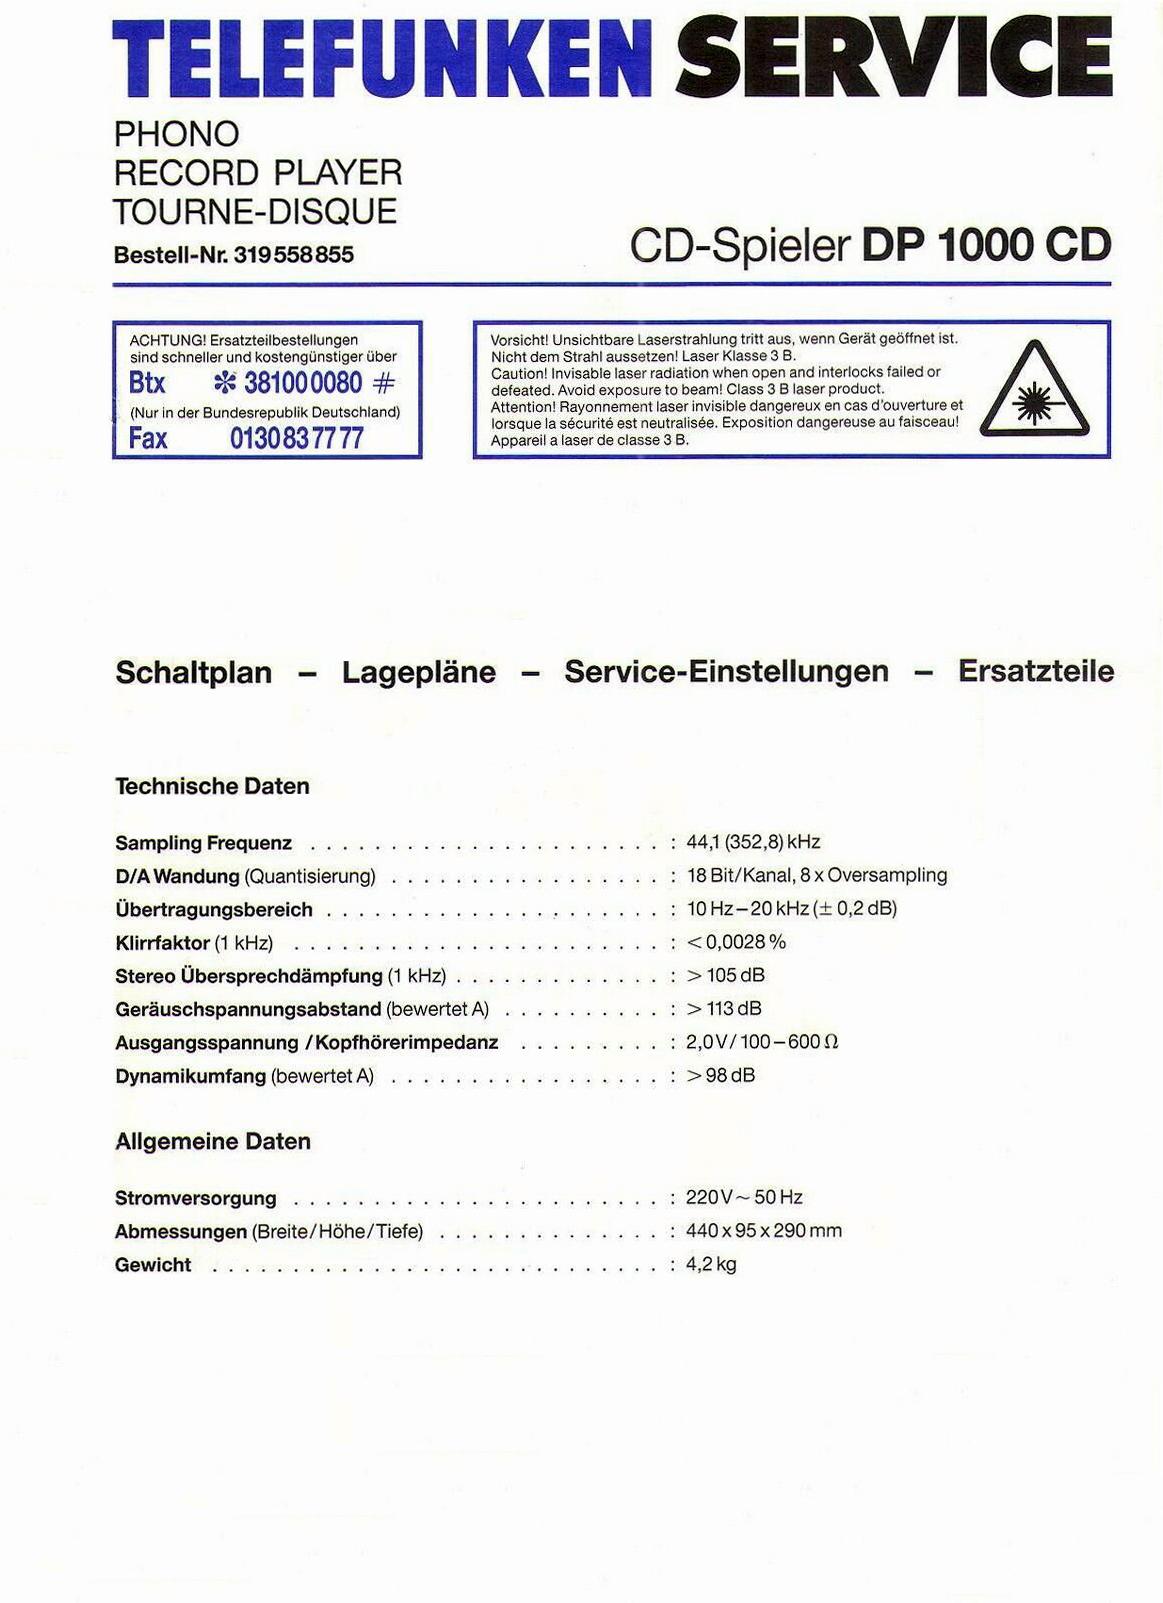 Telefunken DP-1000 CD-Daten-1992.jpg